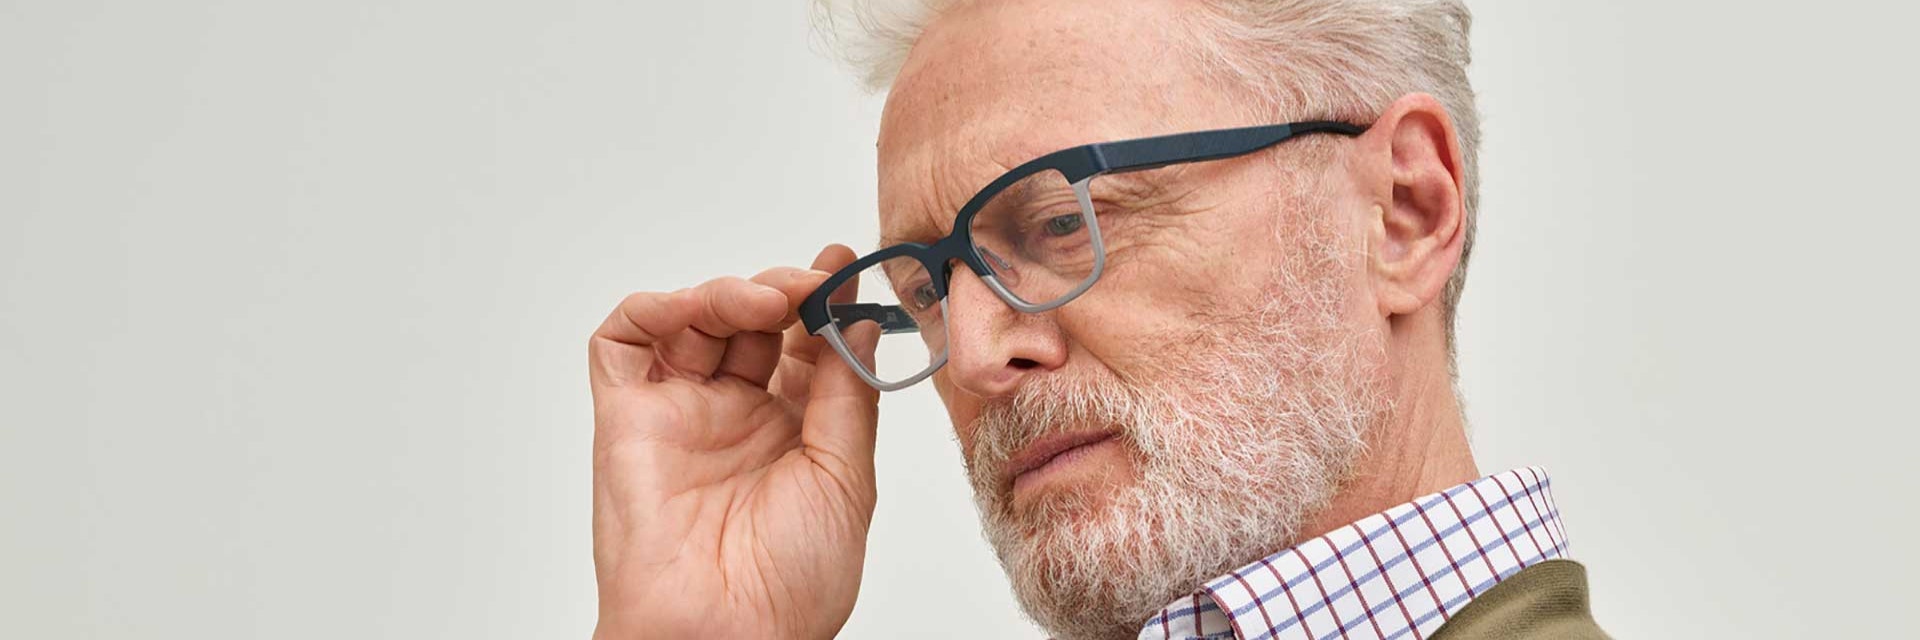 Uomo anziano che indossa occhiali autofocus Morrow stampati in 3D